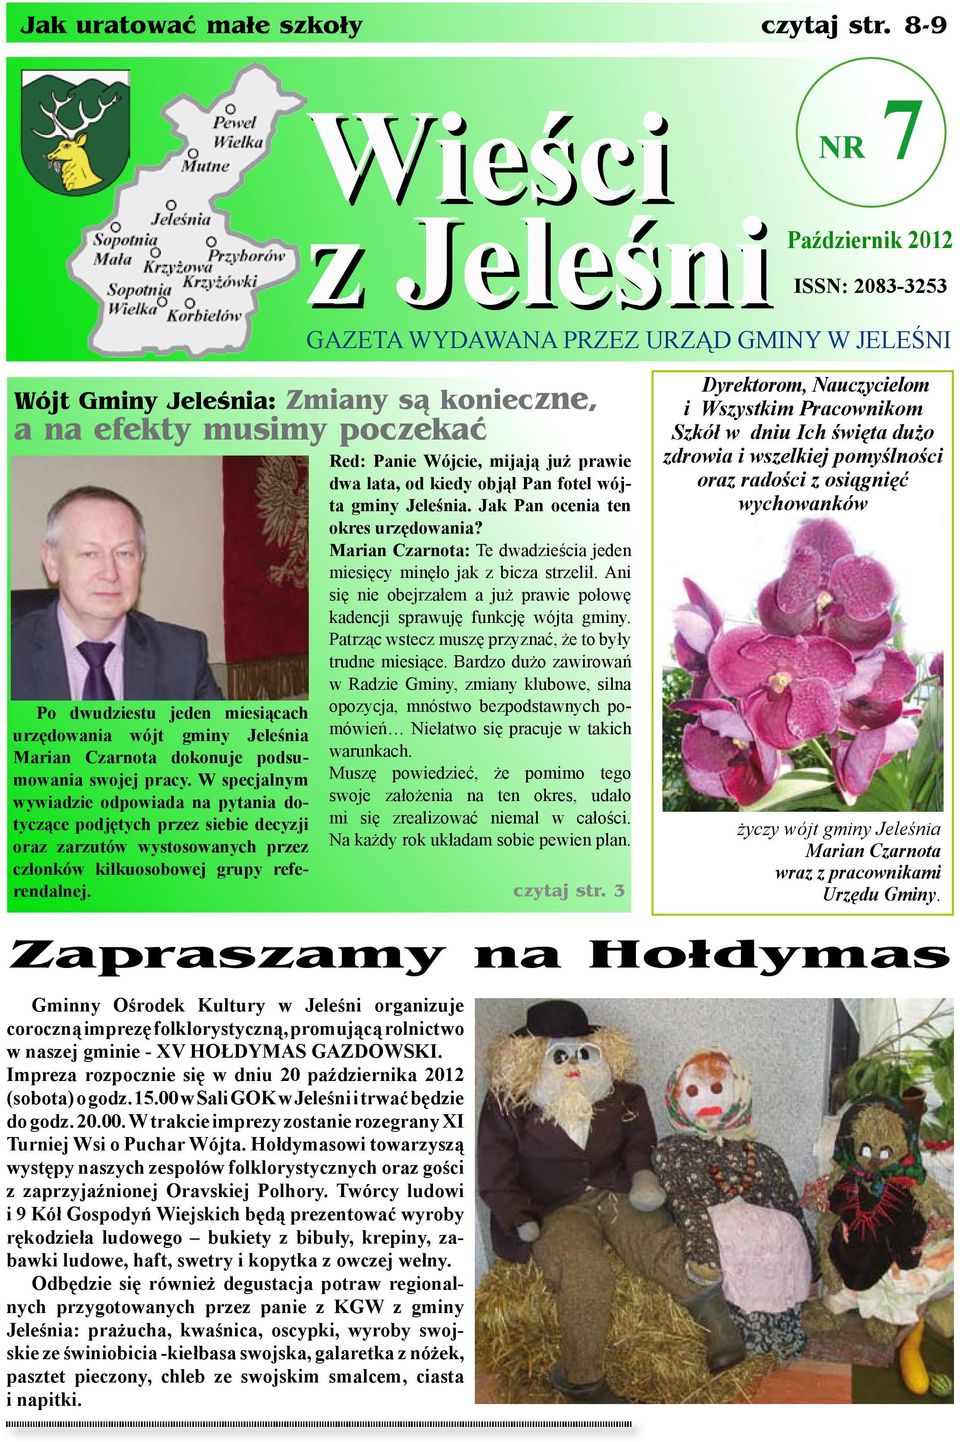 miesiącach urzędowania wójt gminy Jeleśnia Marian Czarnota dokonuje podsumowania swojej pracy.